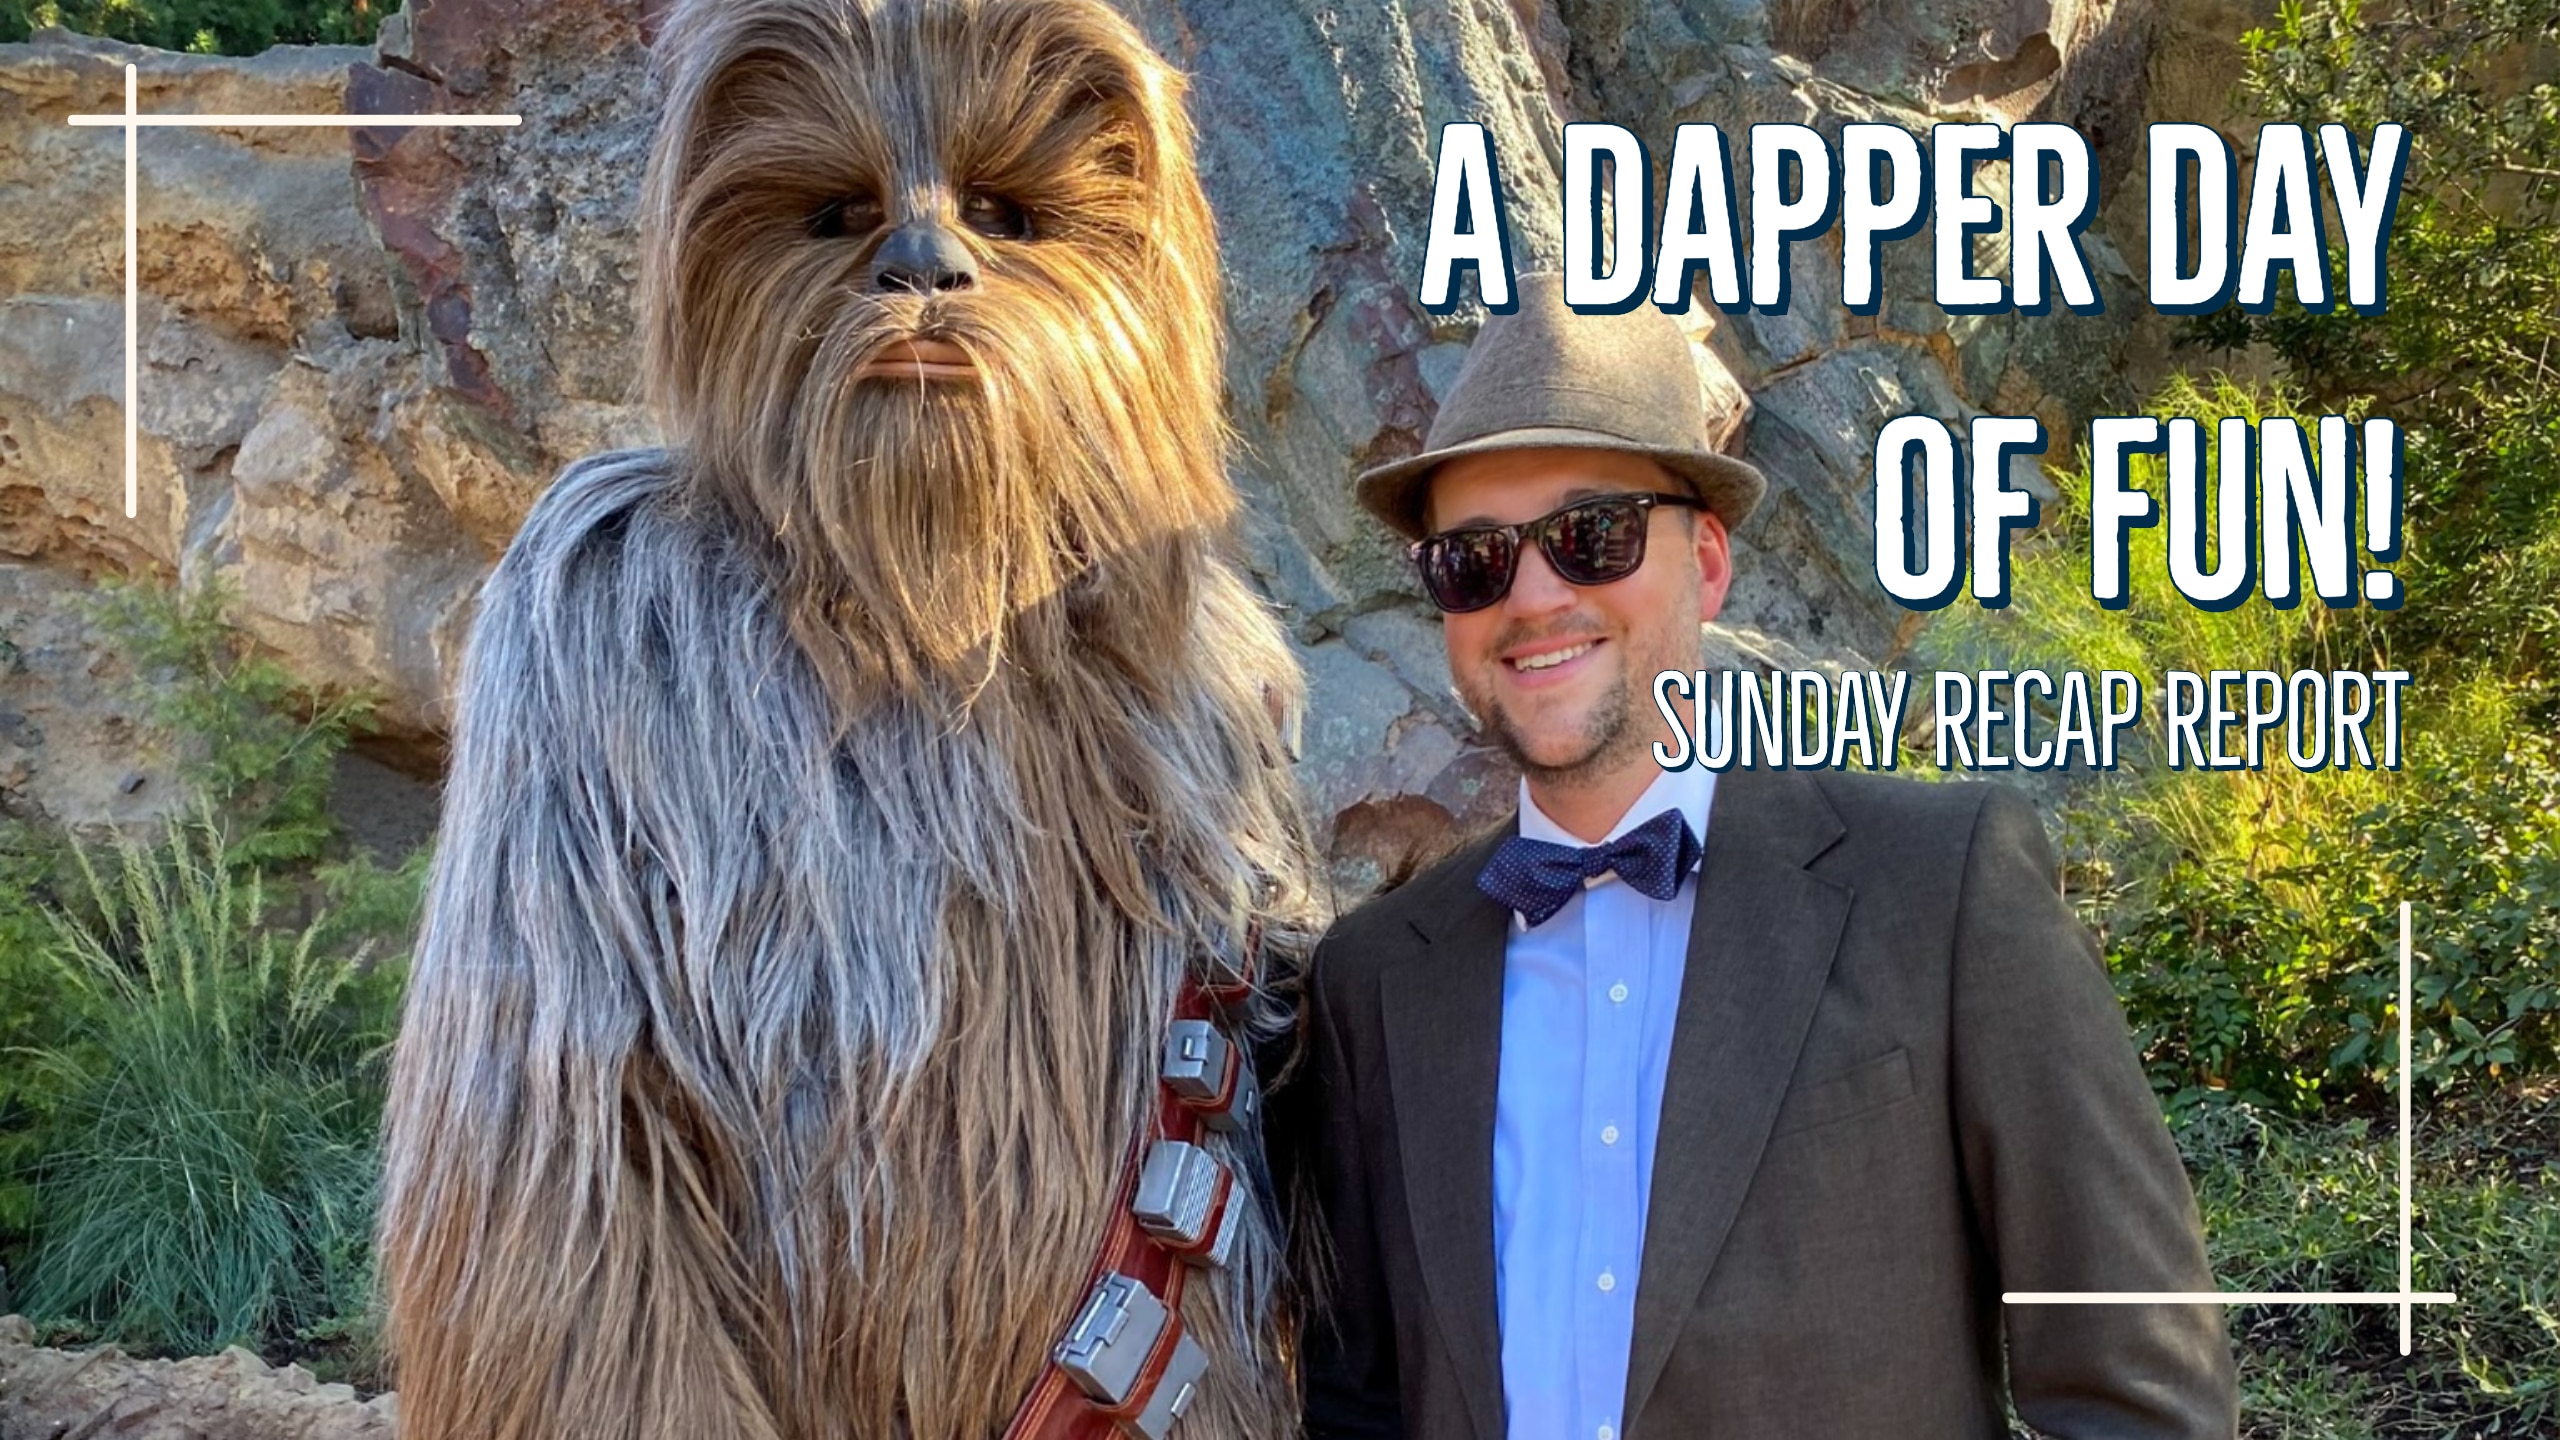 Sunday Recap Report – A Dapper Day of Fun!